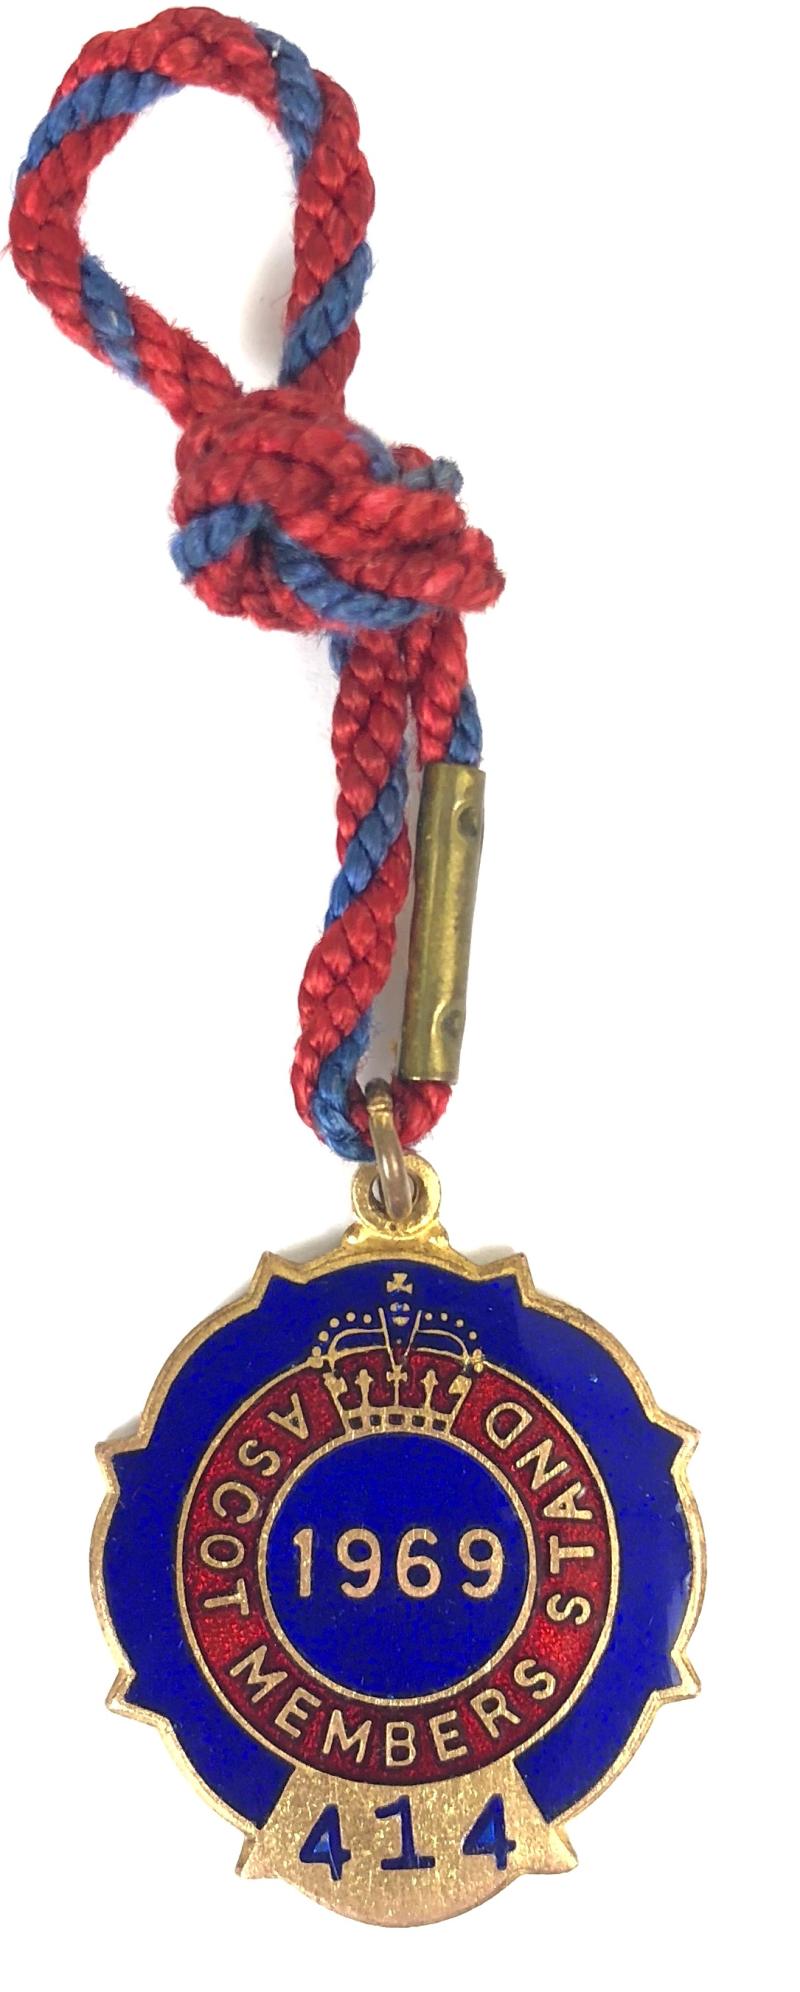 1969 Ascot Members Stand horse racing club badge